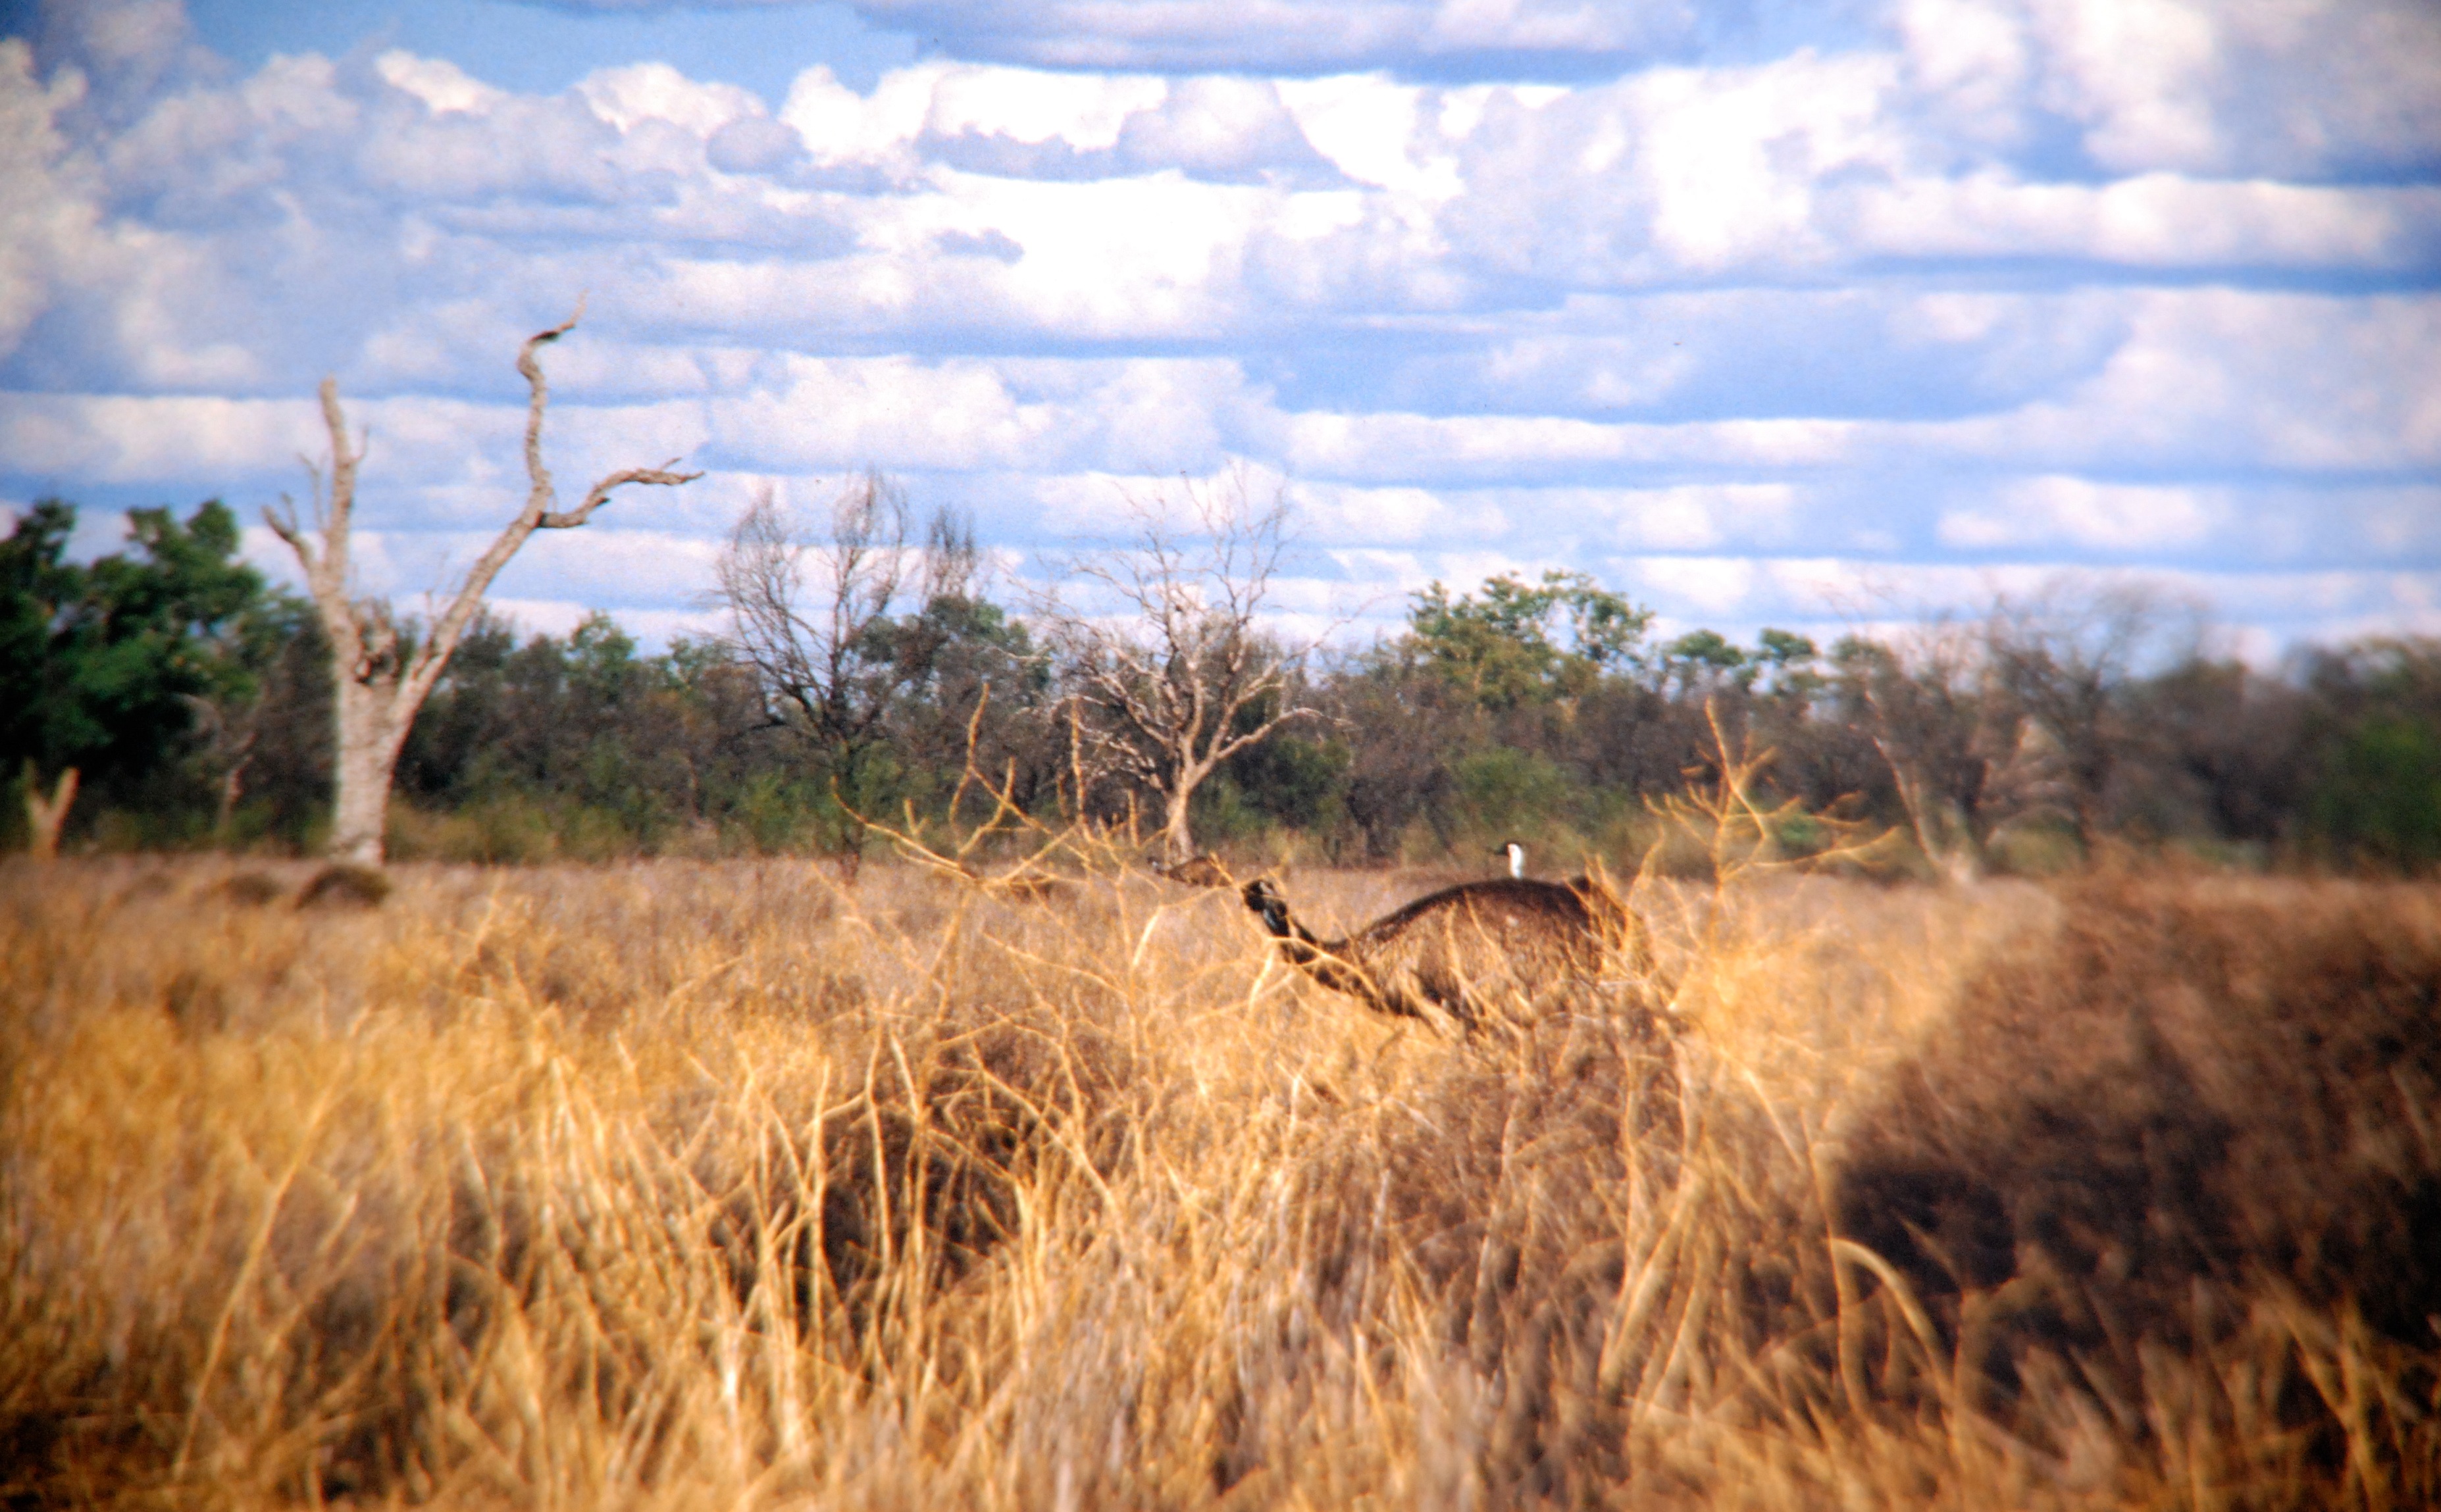 The emu's habitat in Australia.  Picture taken by my grandma.